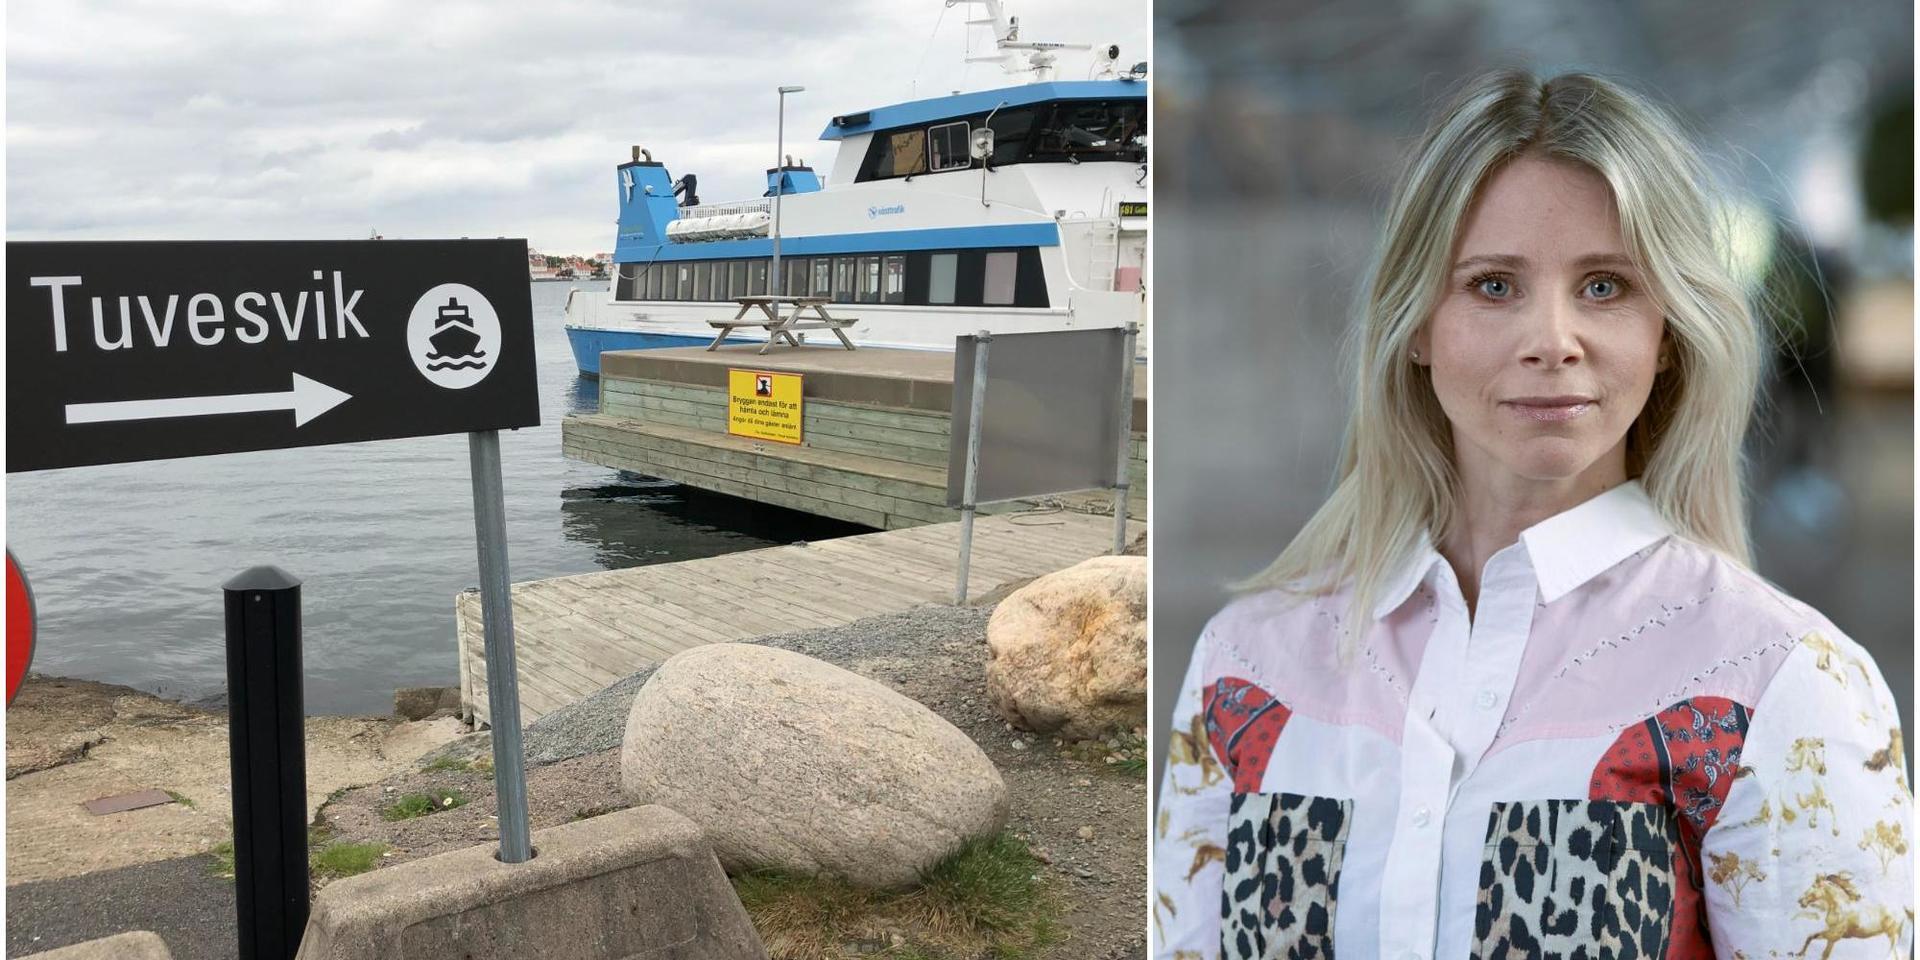 Enligt Johanna Eriksson Eknander, affärschef båt på Västtrafik, har de ändrade turerna för linje 381 och 382 från Tuvesvik att göra med ombyggnationen av hållplatsen Piren på Gullholmen. 